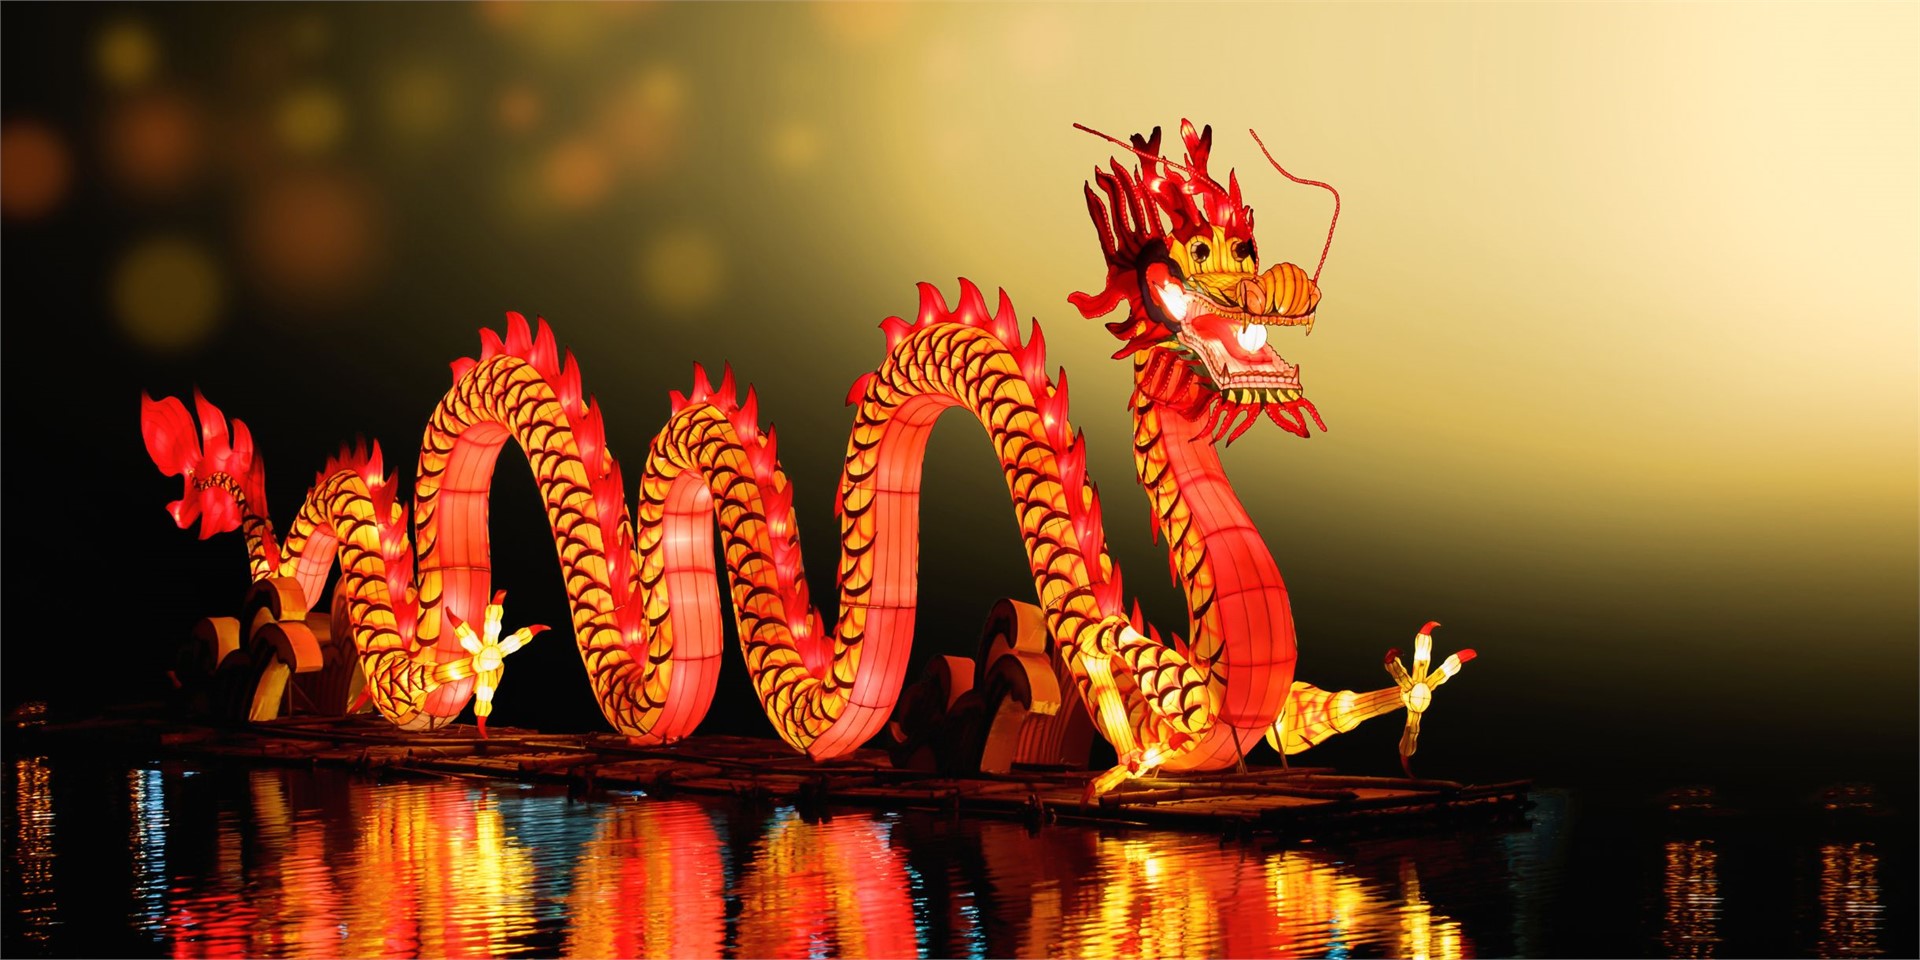 Buche Deine Reise zum chinesischen Neujahrsfest in Peking
